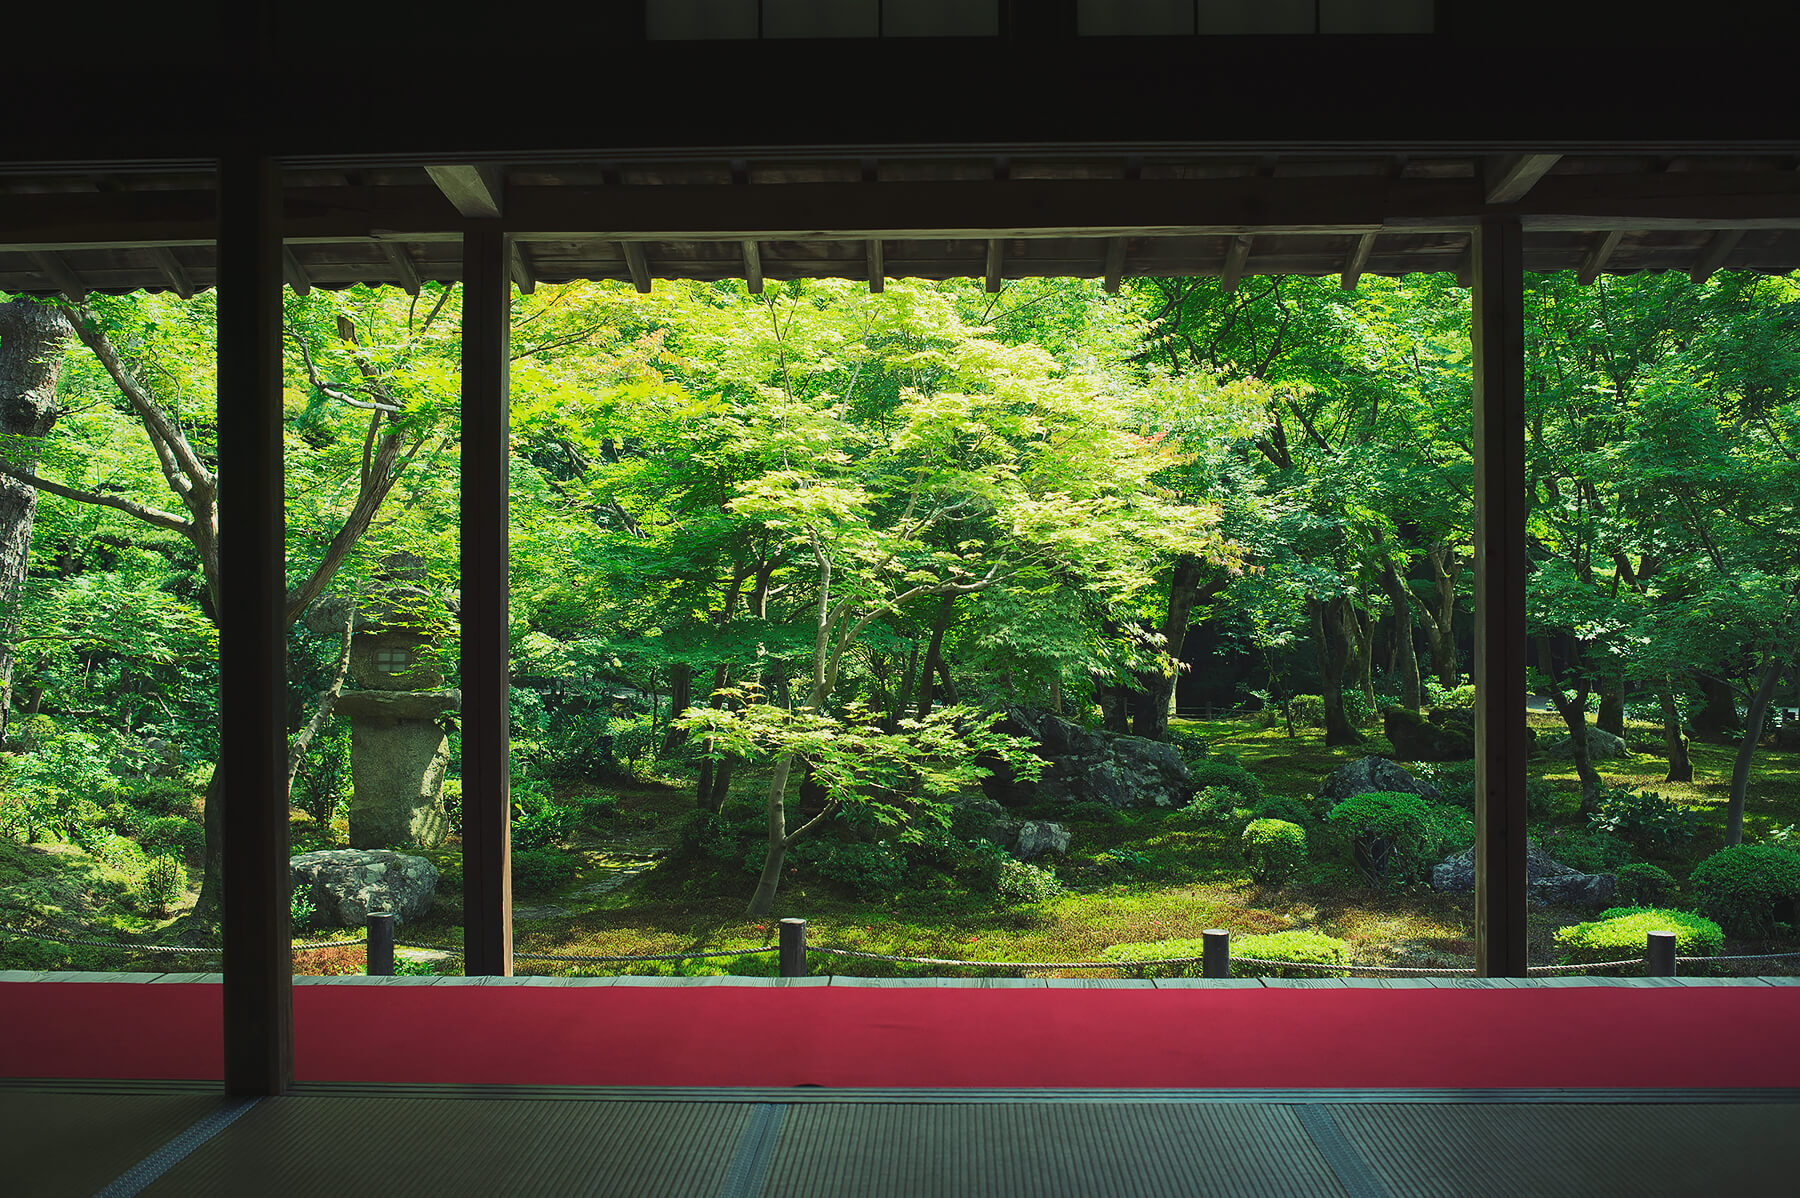 
          京都「圓光寺」の庭園写真3
      